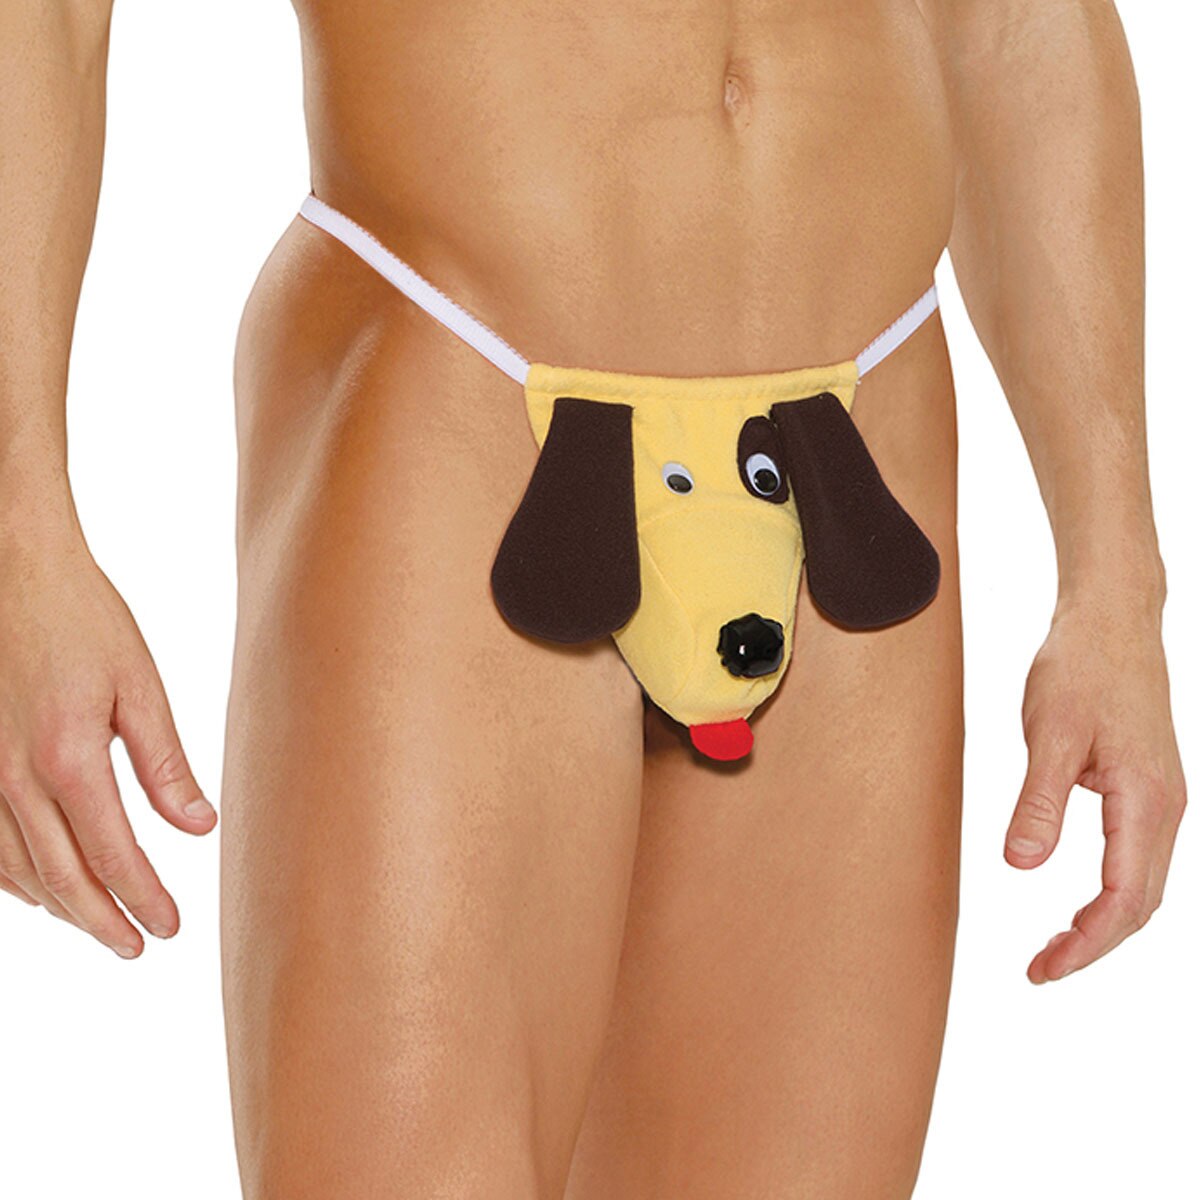 SALE - Mens Dog Pouch G string Novelty Underwear